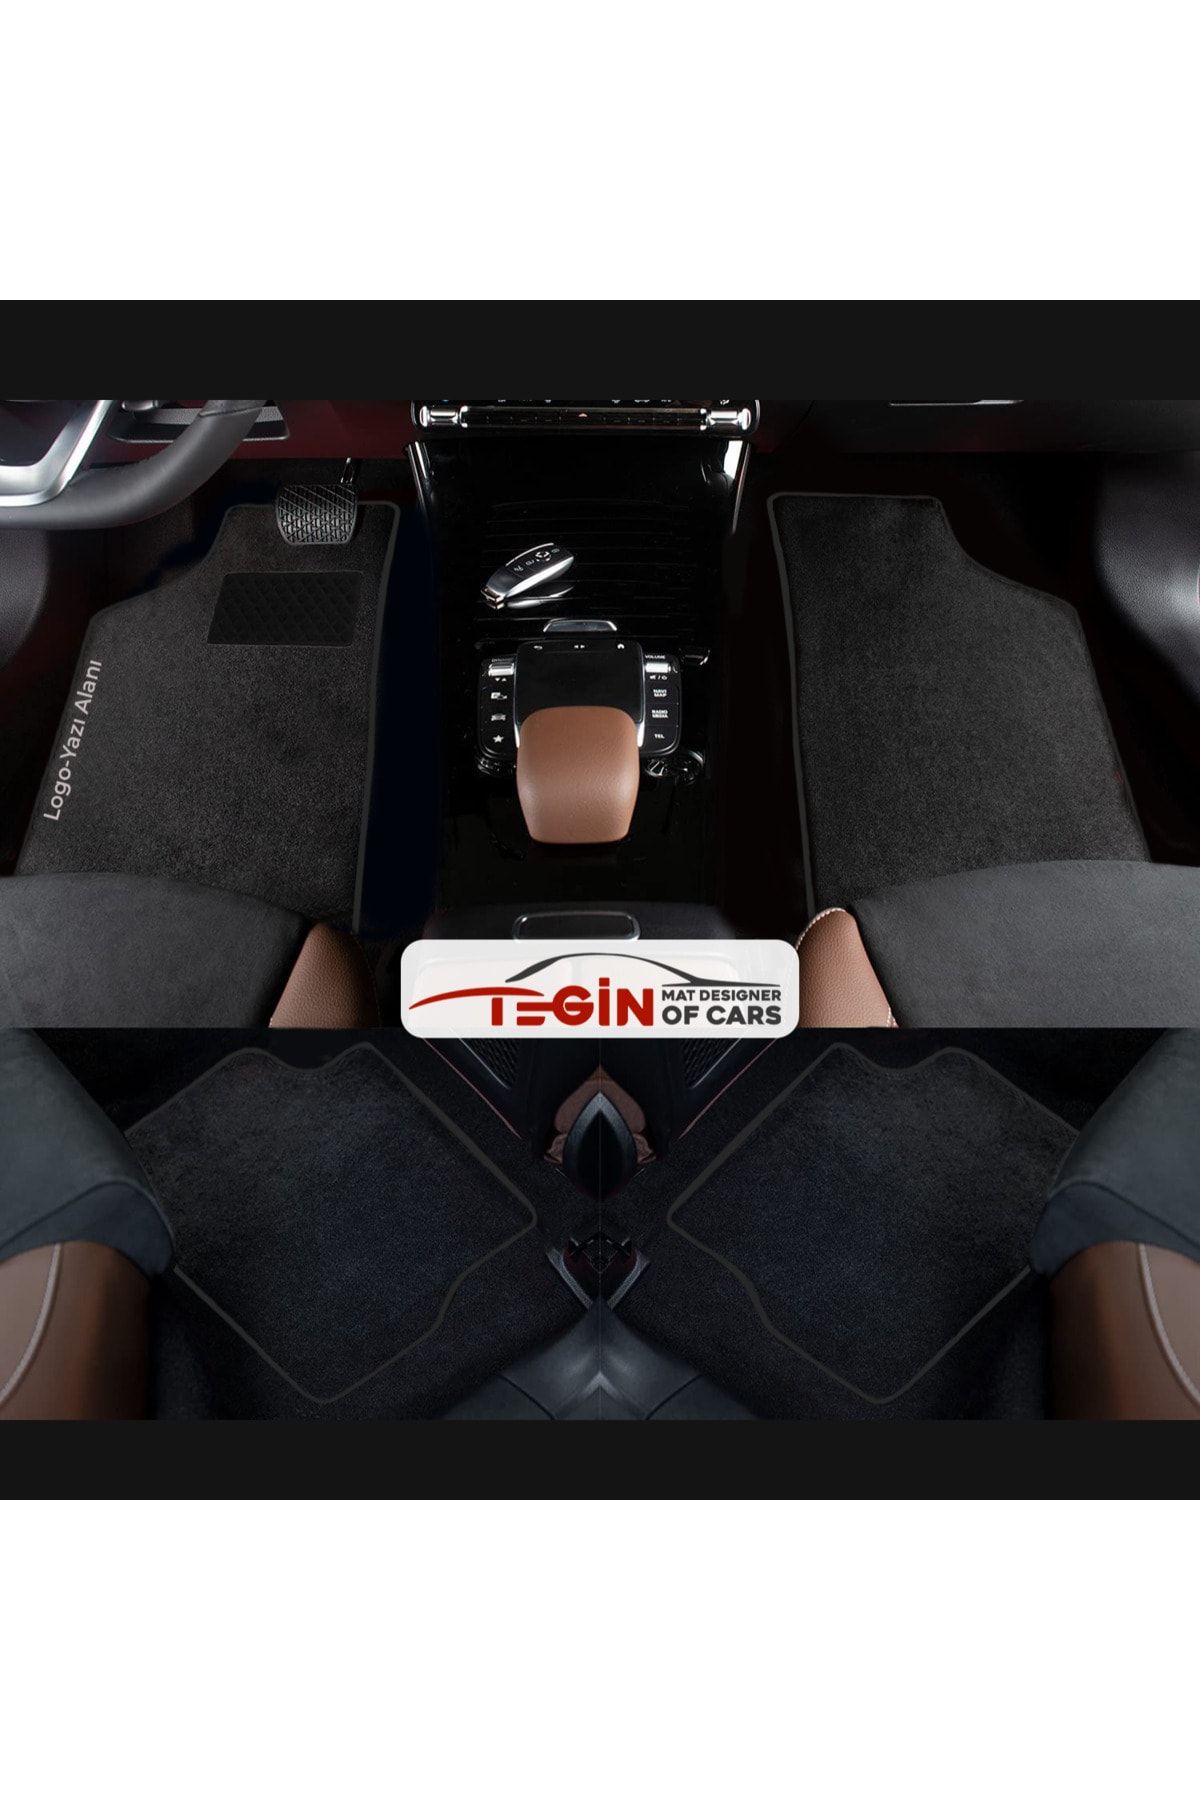 Tegin Mat Designer Of Cars Seat Leon 5f 2014+ Coupe Aracınıza Özel Prime Siyah Halı Siyah Kenar Halı Paspas